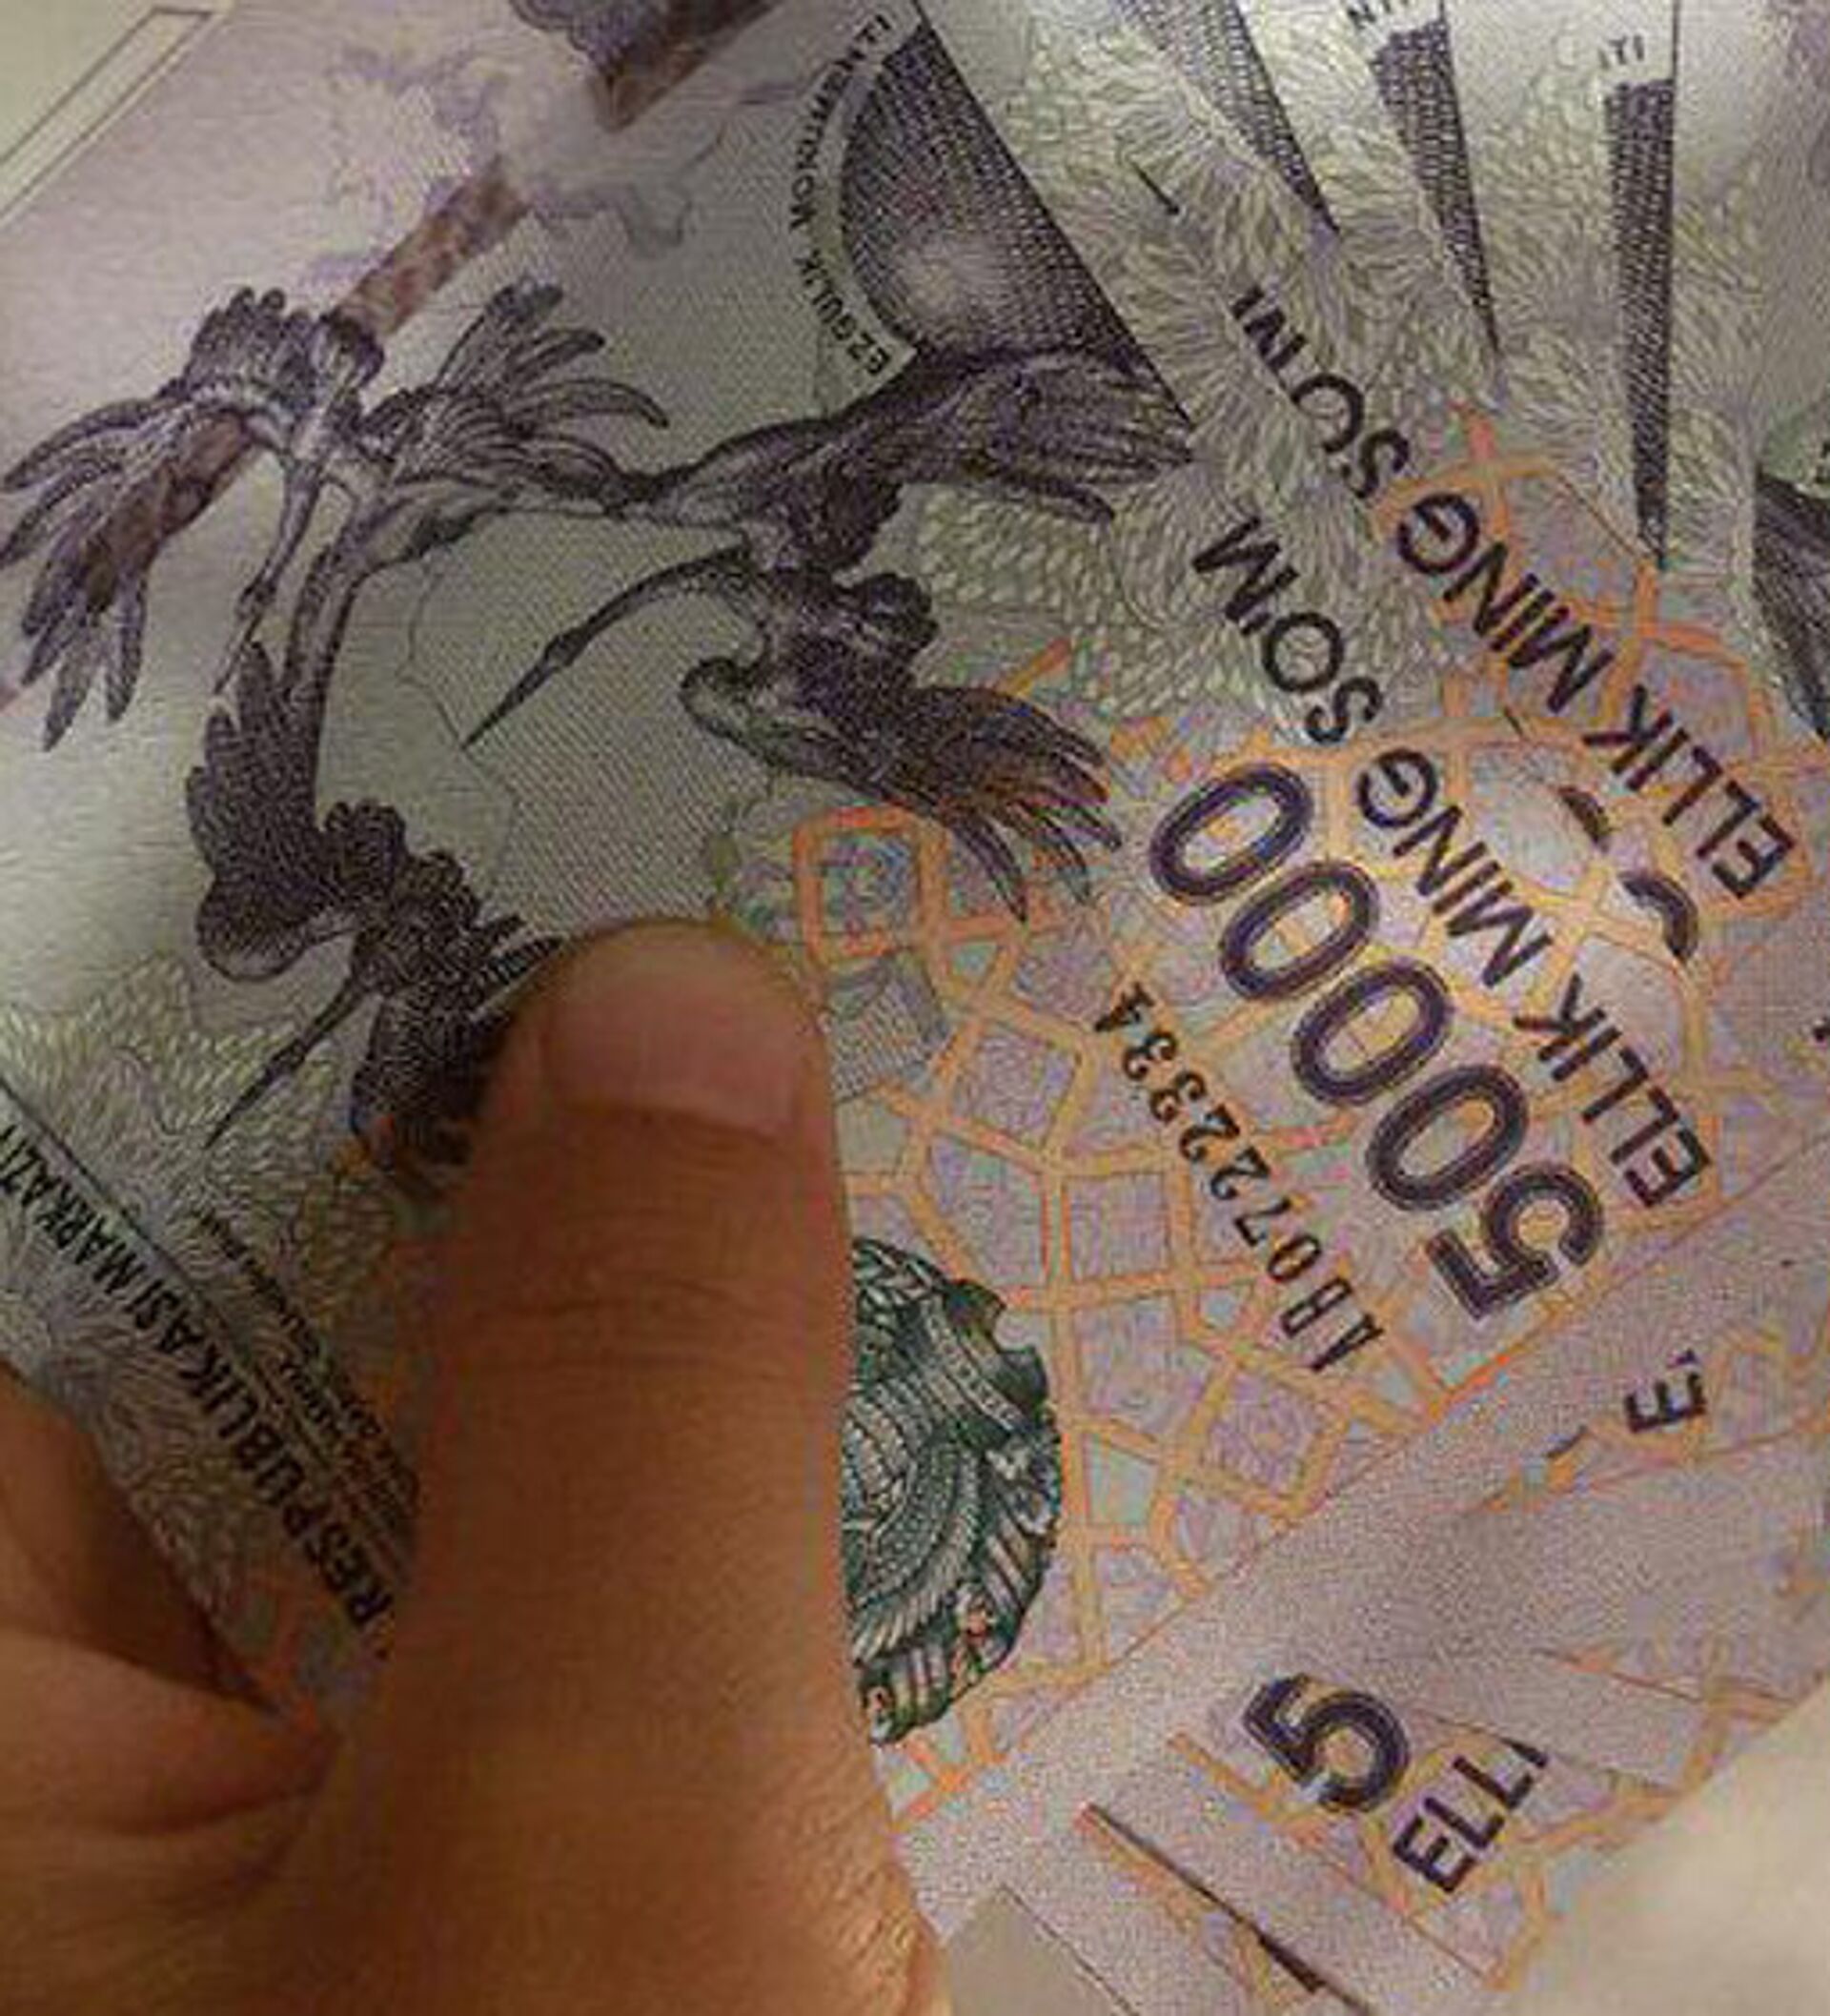 Доллар валюта сум узбекистан. Узбекские деньги. Сум валюта. Купюра 100 сум Узбекистан. Самая большая купюра в Узбекистане.